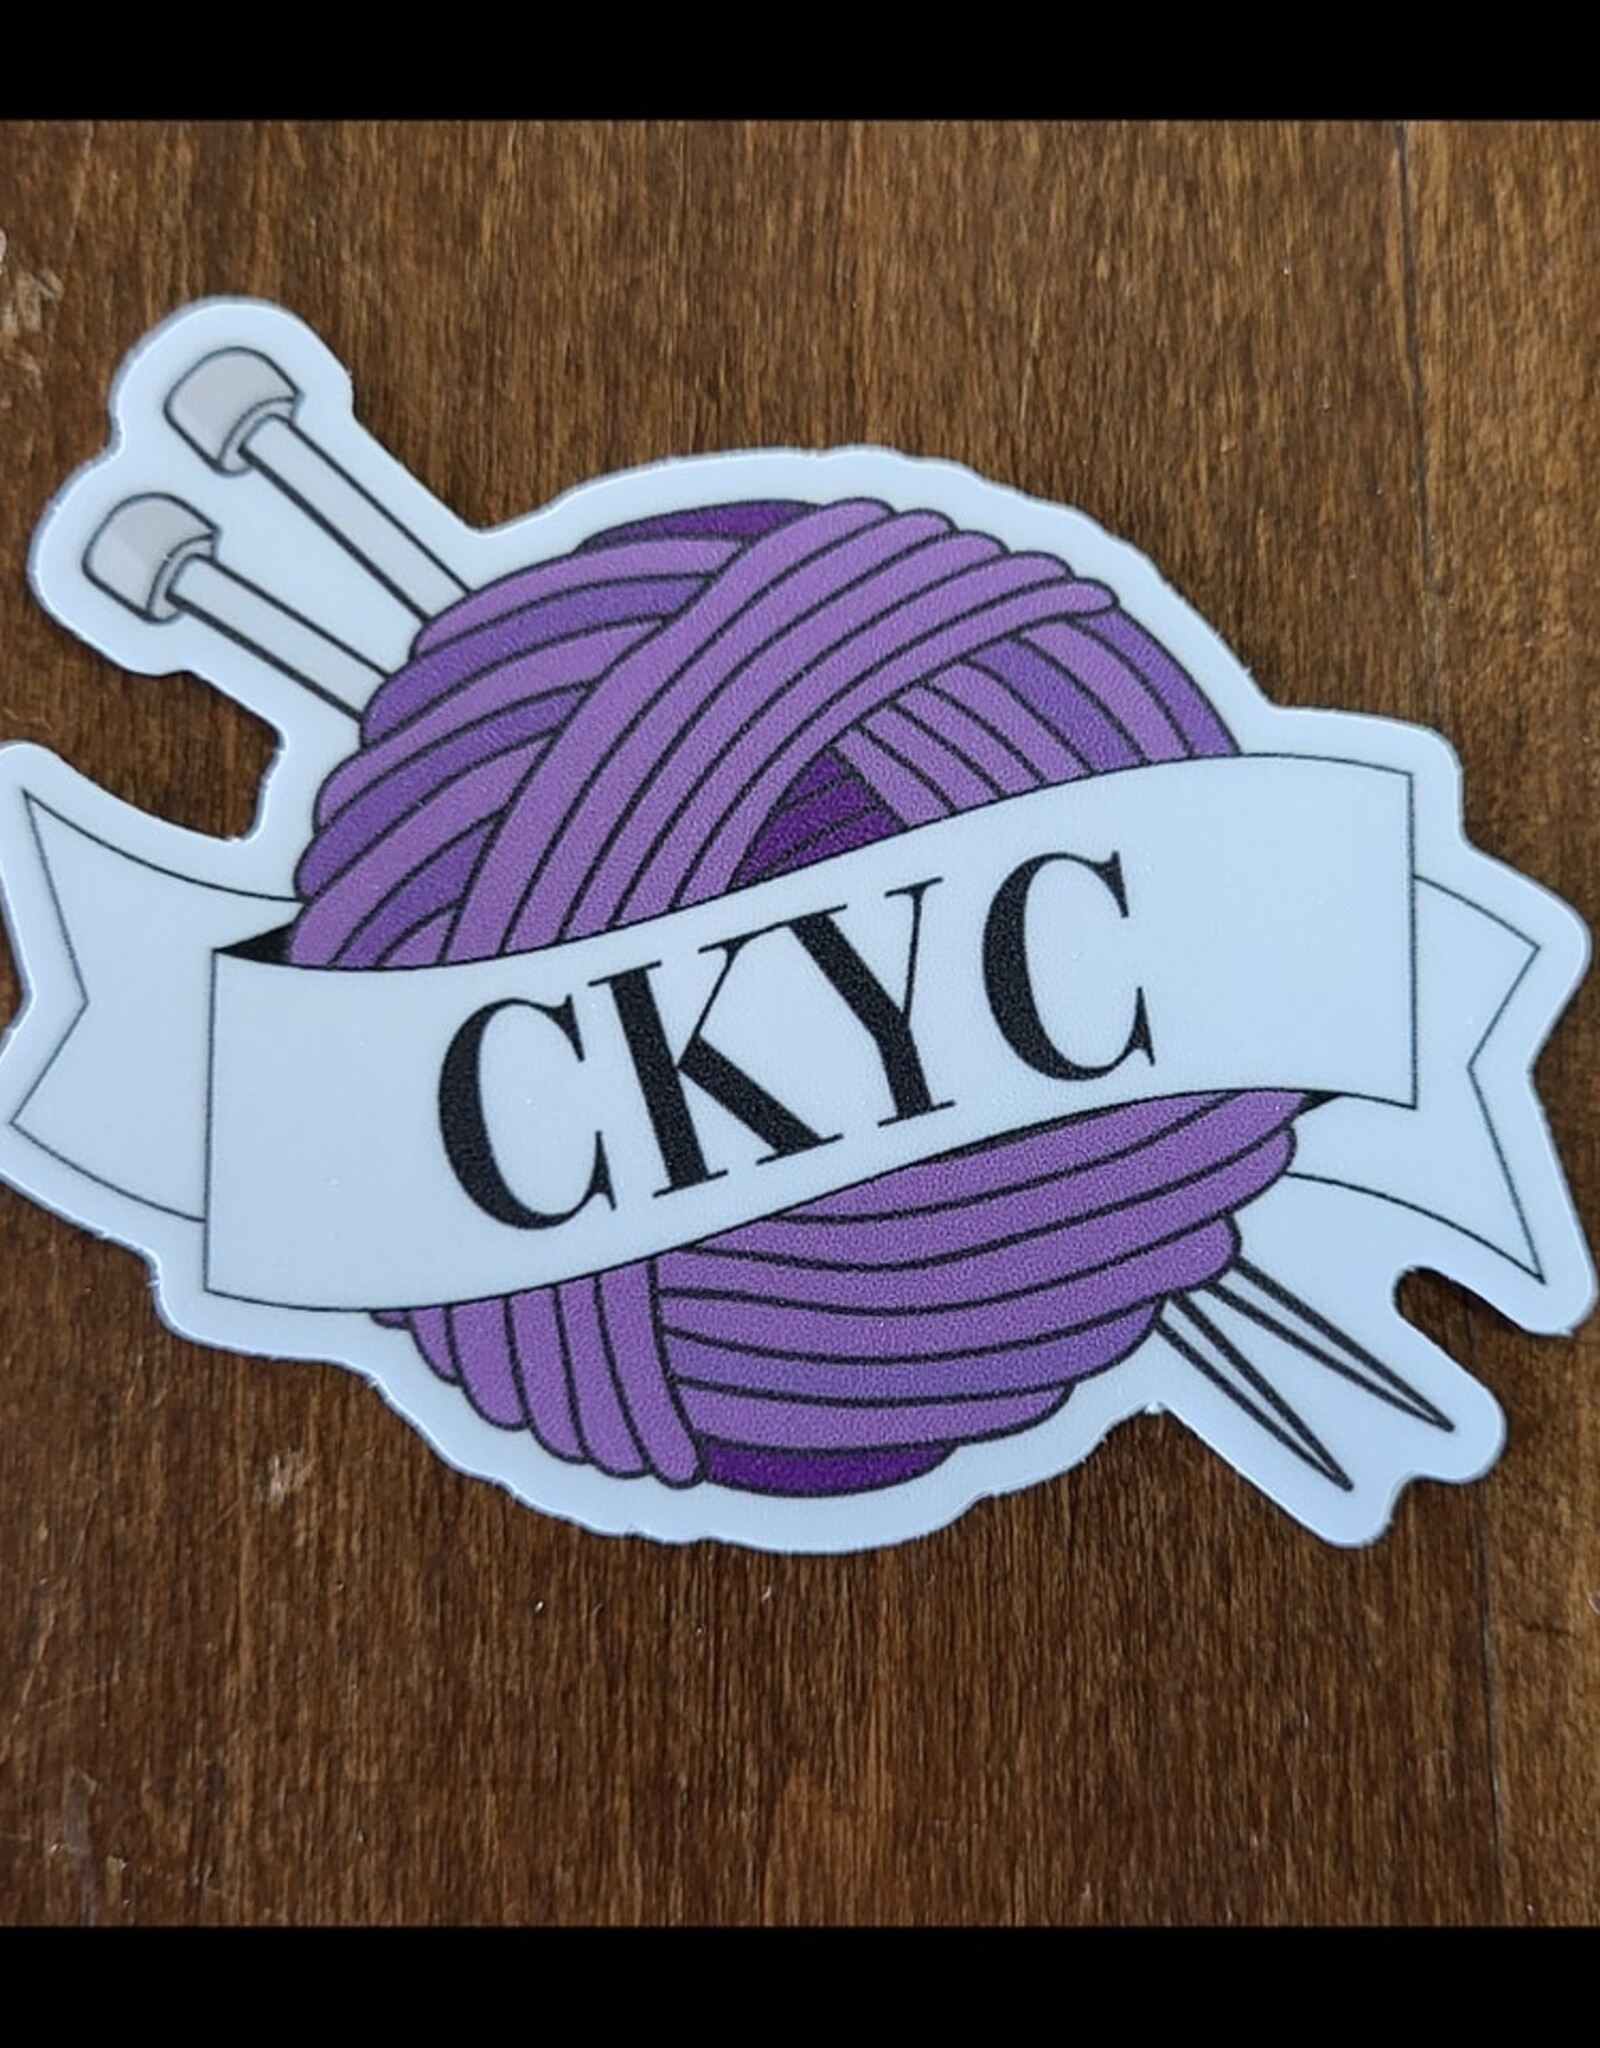 CKYC sticker